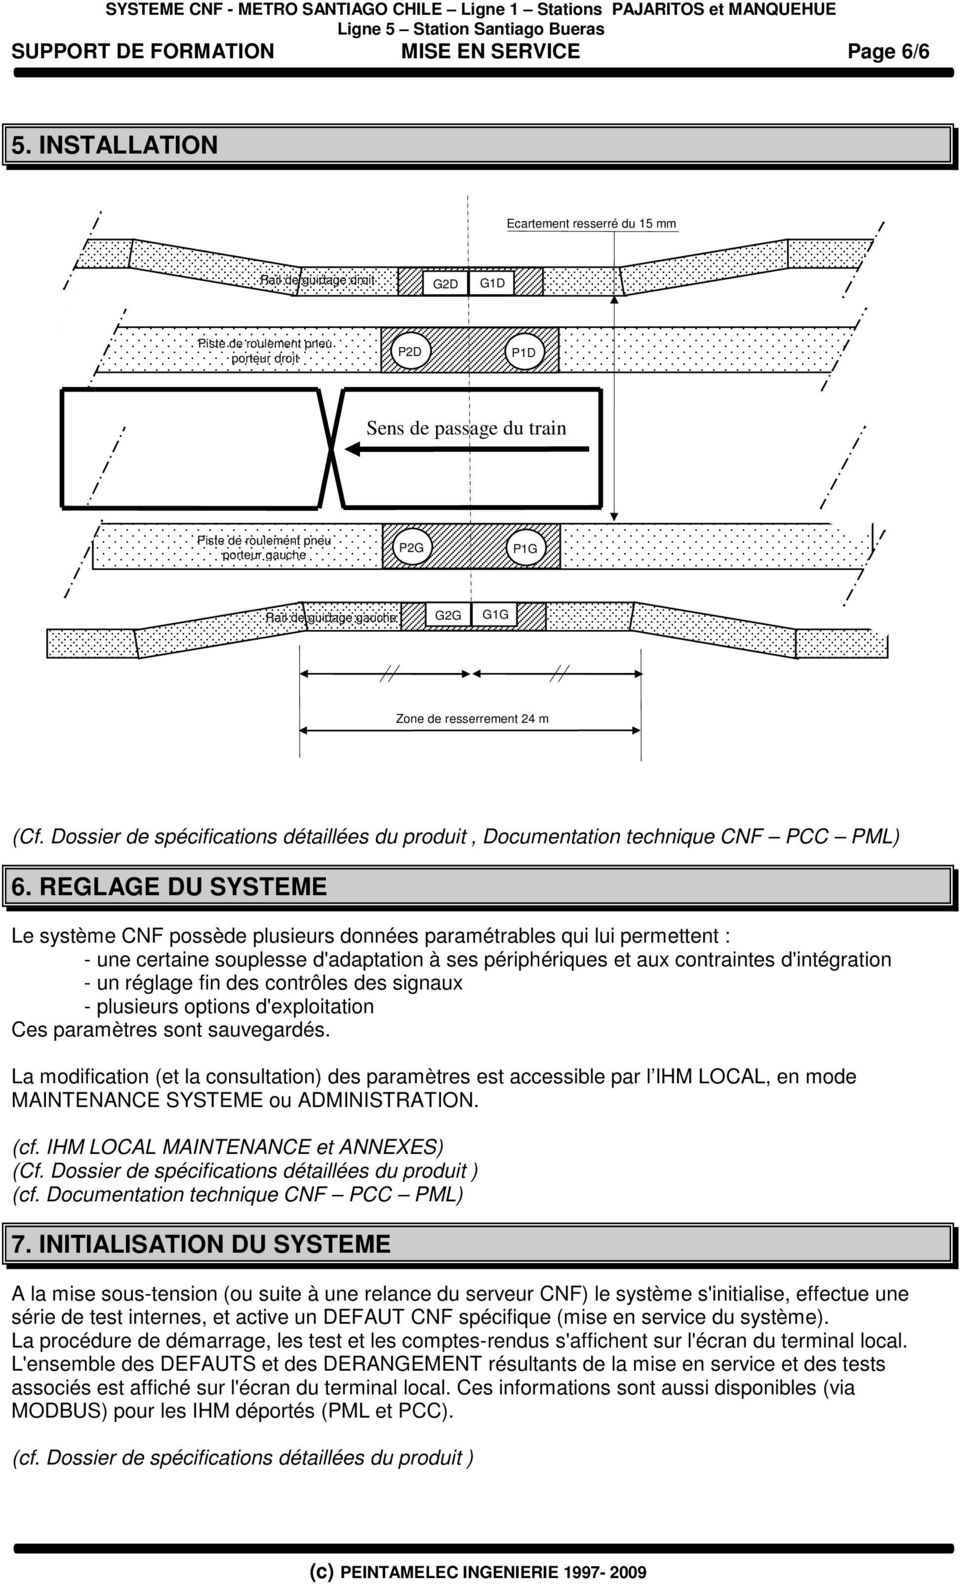 guidage gauche G2G G1G Zone de resserrement 24 m (Cf. Dossier de spécifications détaillées du produit, Documentation technique CNF PCC PML) 6.